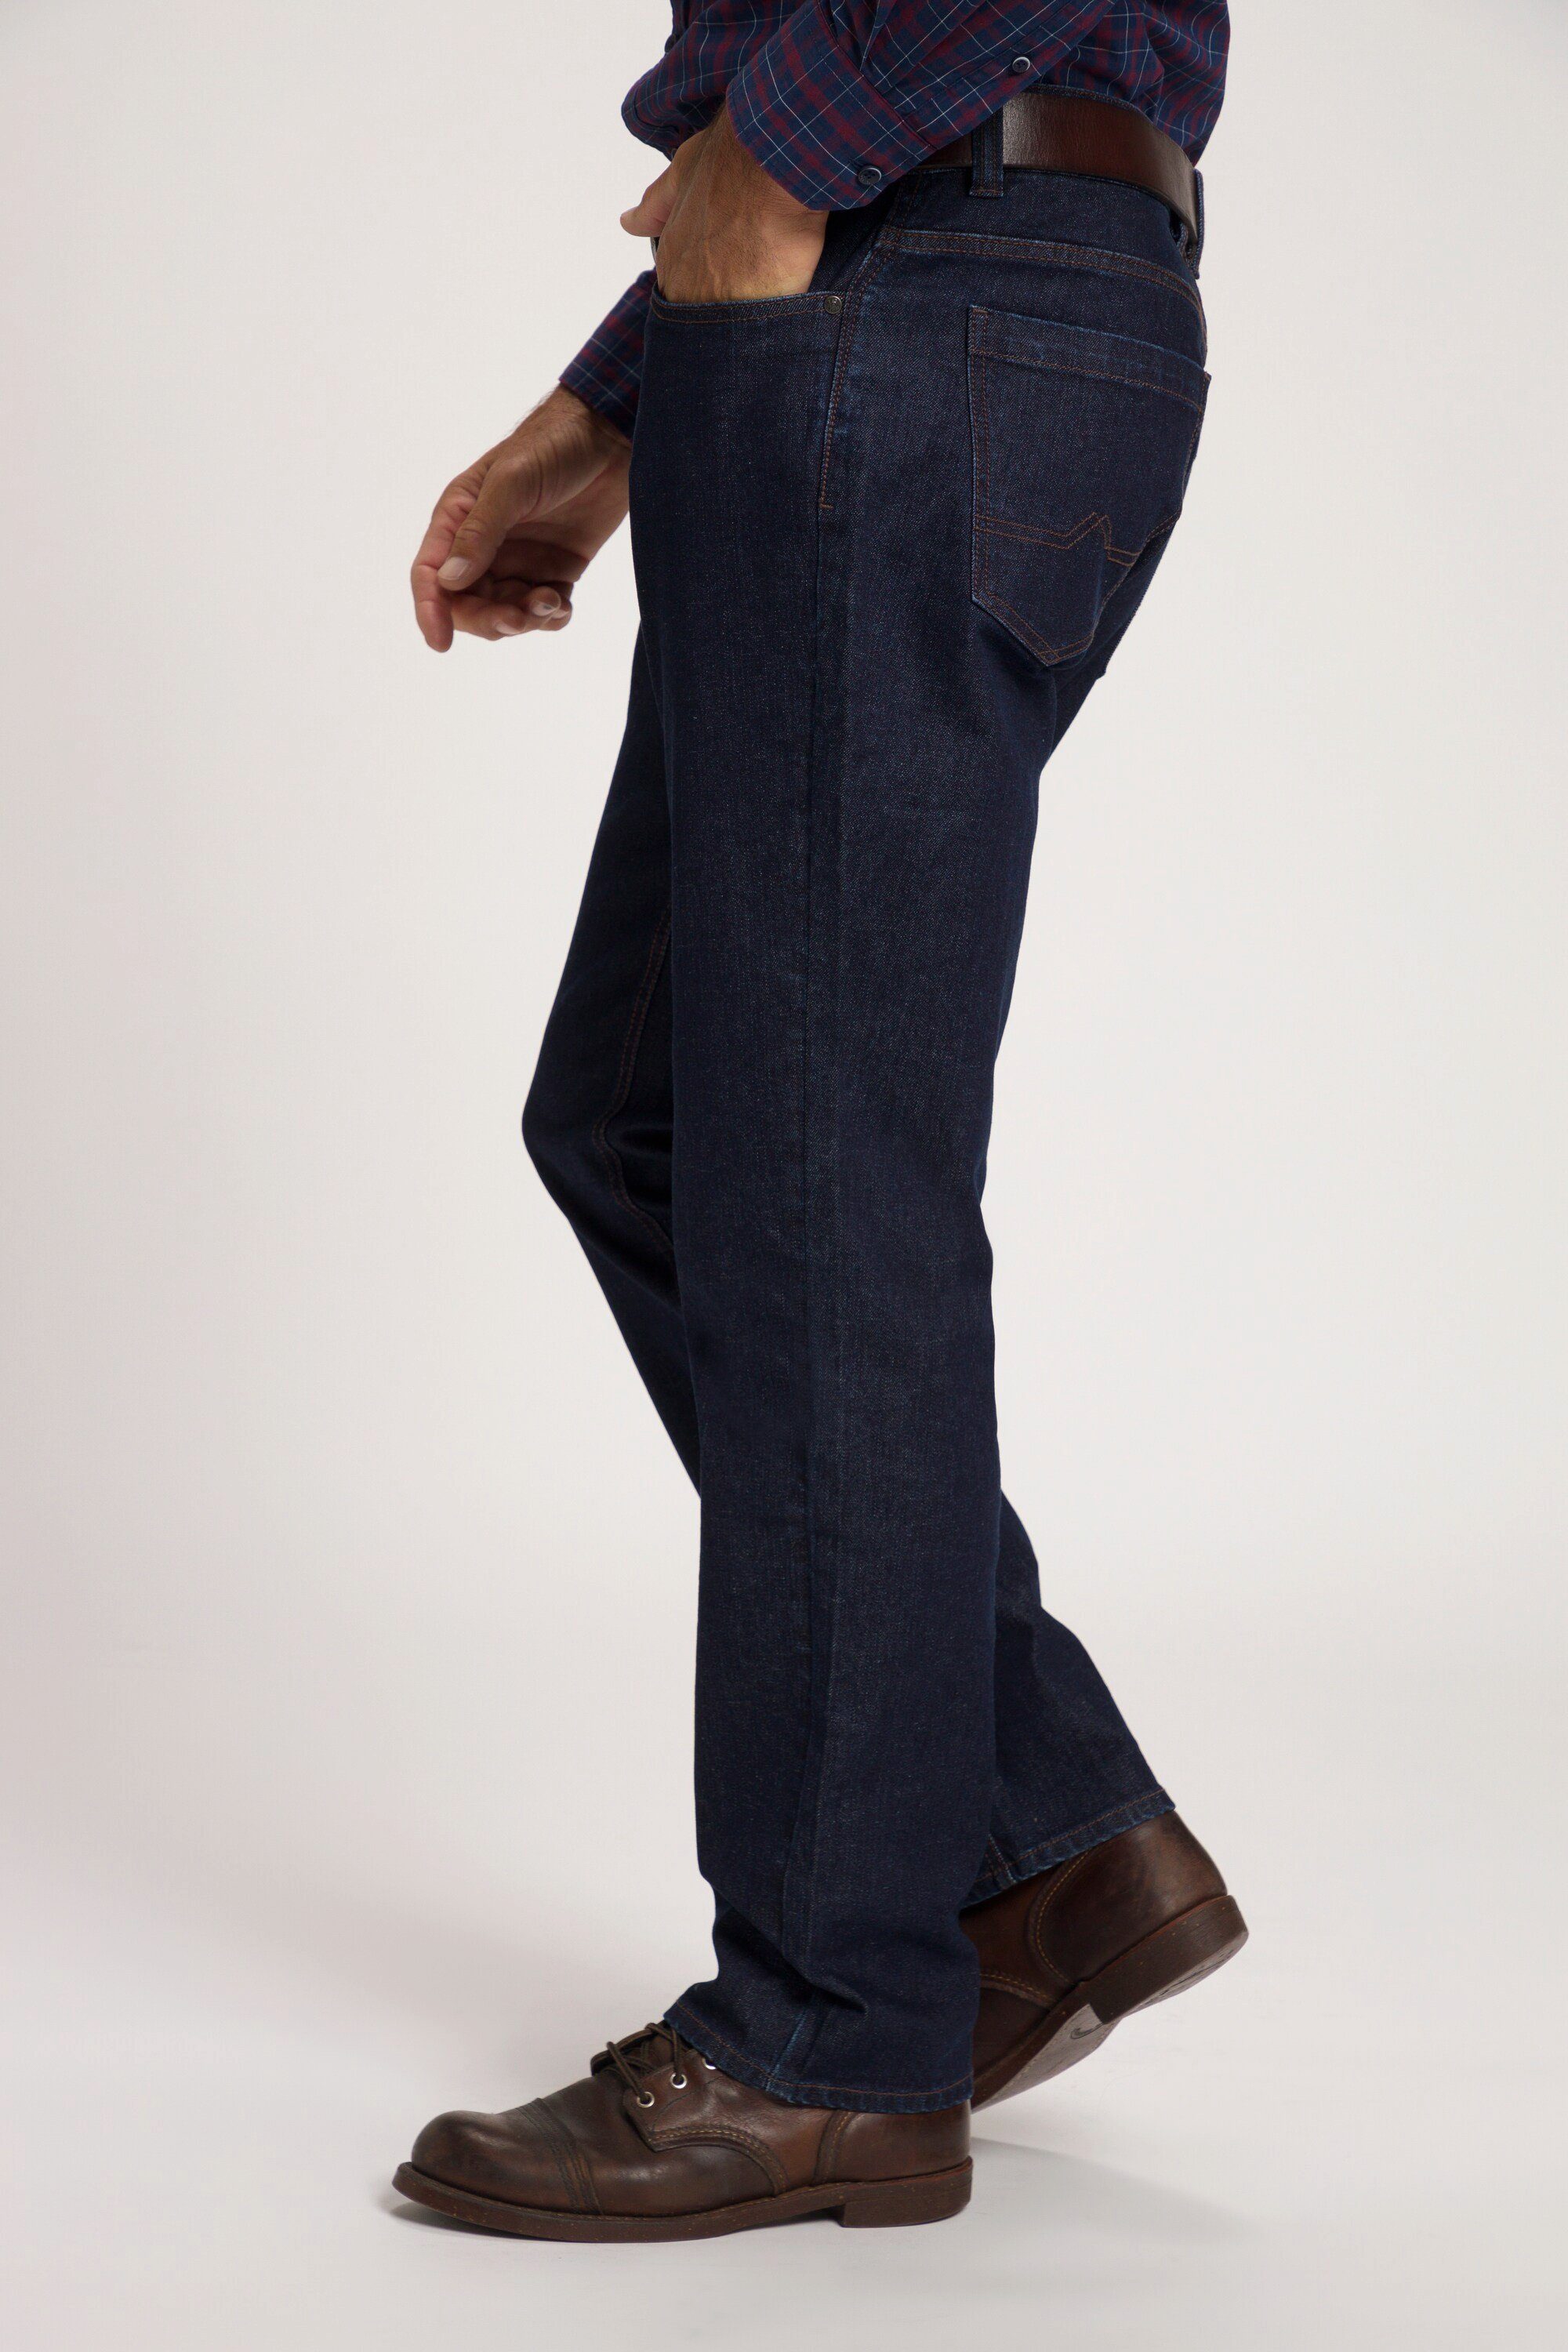 JP1880 Cargohose Jeans 5-Pocket denim Regular bis 70/35 blue dark Fit Gr